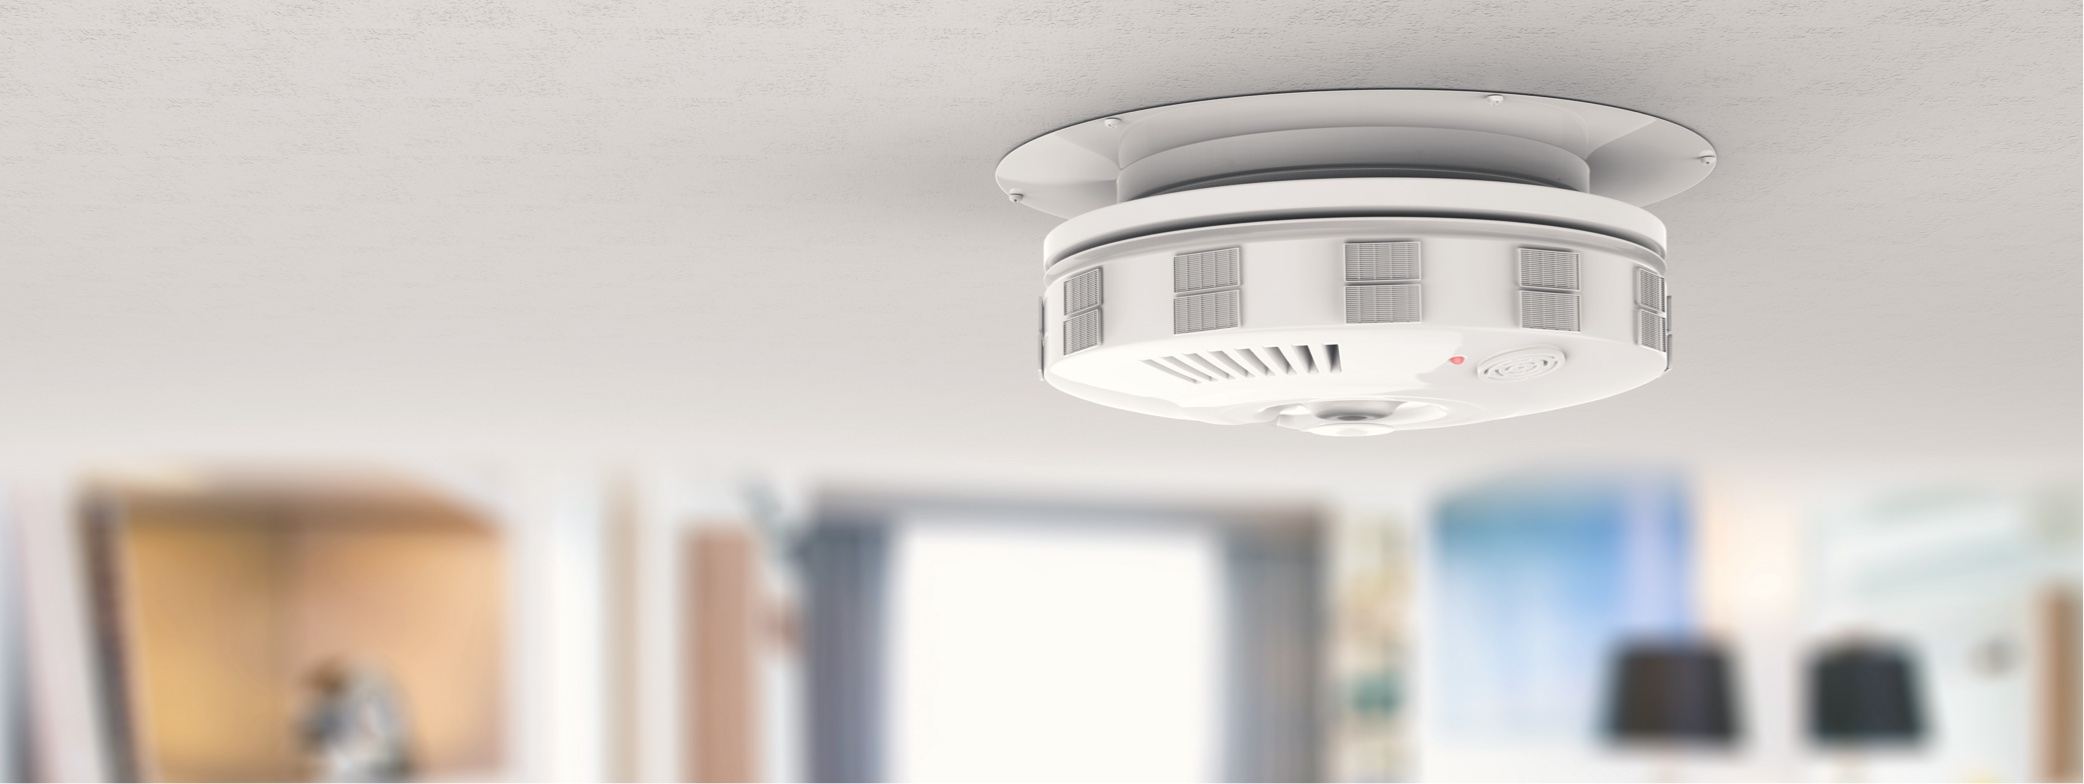 HUD Announces New Rule for Carbon Monoxide Alarms